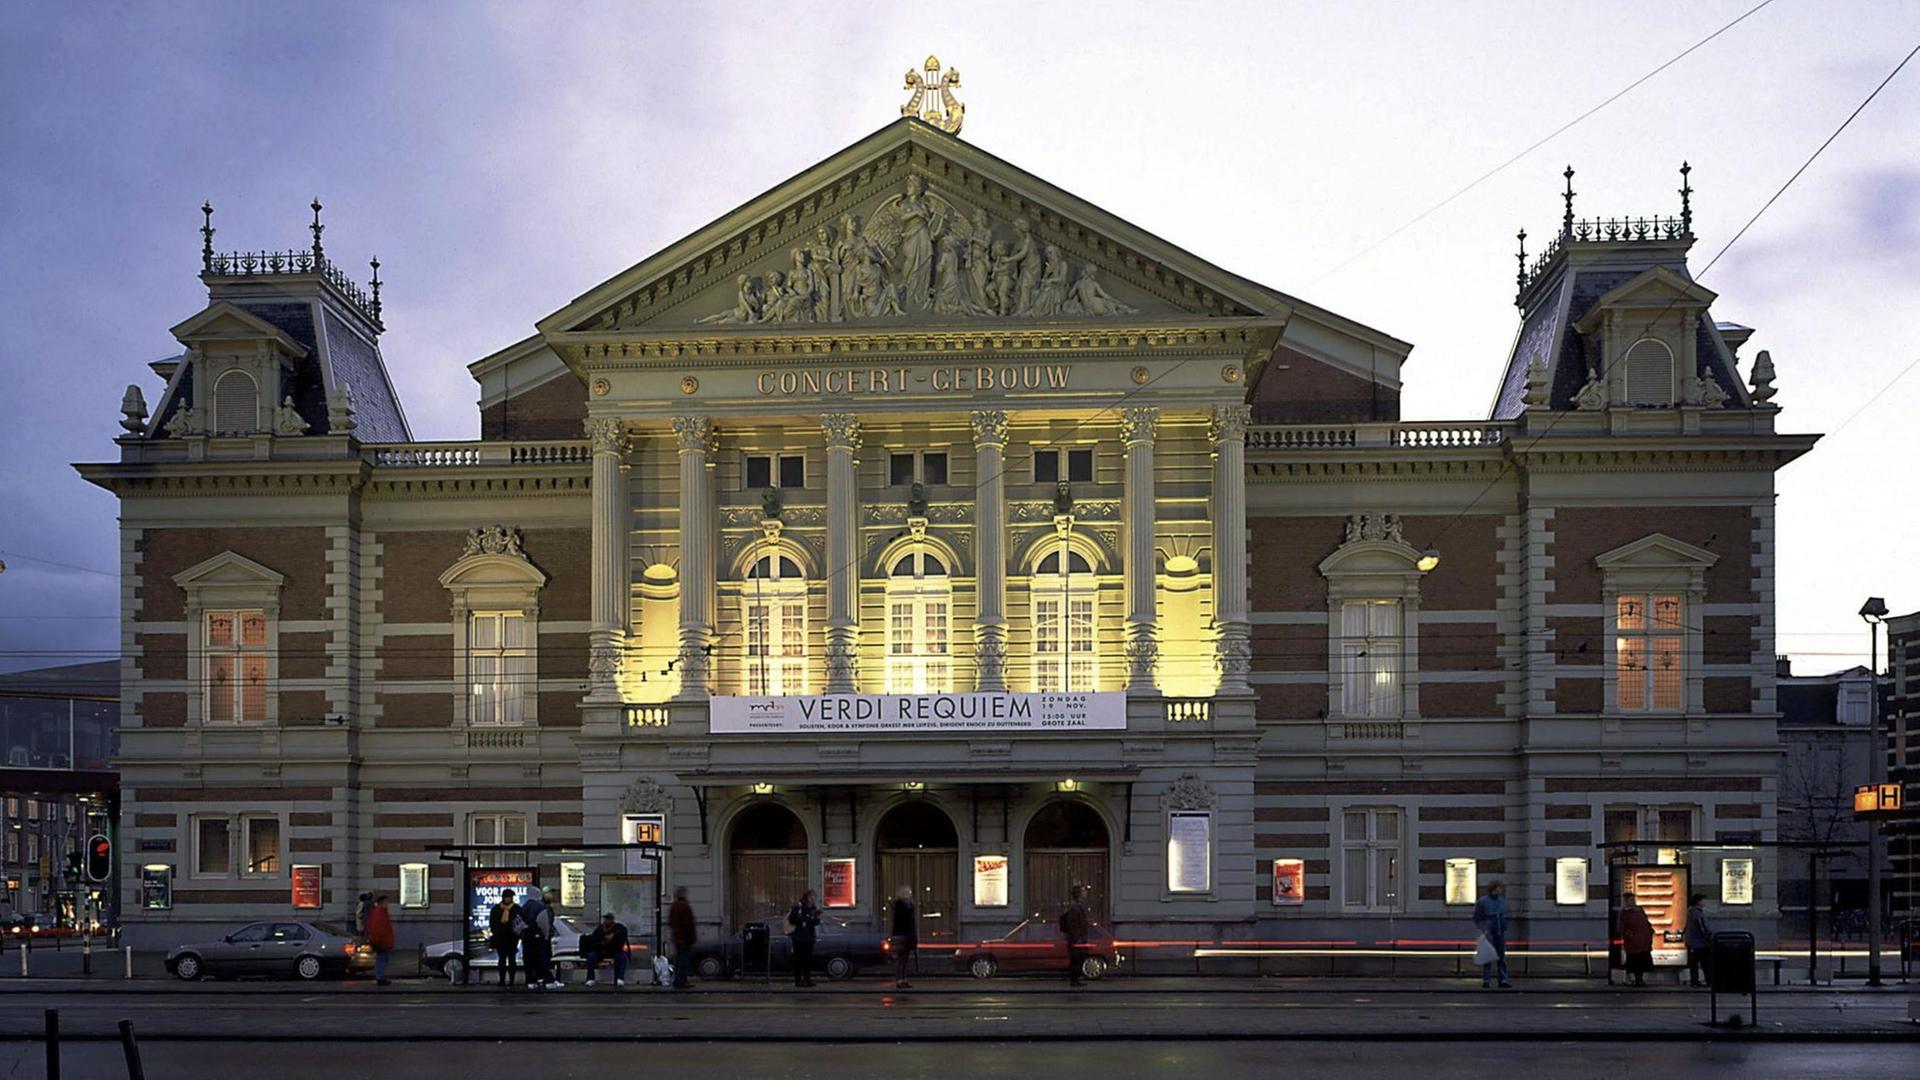 Das berühmte Concertgebouw (deutsch: Konzertgebäude) in Amsterdam gab dem Königlichen Concertgebouworchester den Namen, das von dem renommierten Klassik-Magazin "Gramophone" zum weltbesten Ensemble gewählt wurde.  Foto: Cees van Leeuwen +++(c) dpa 